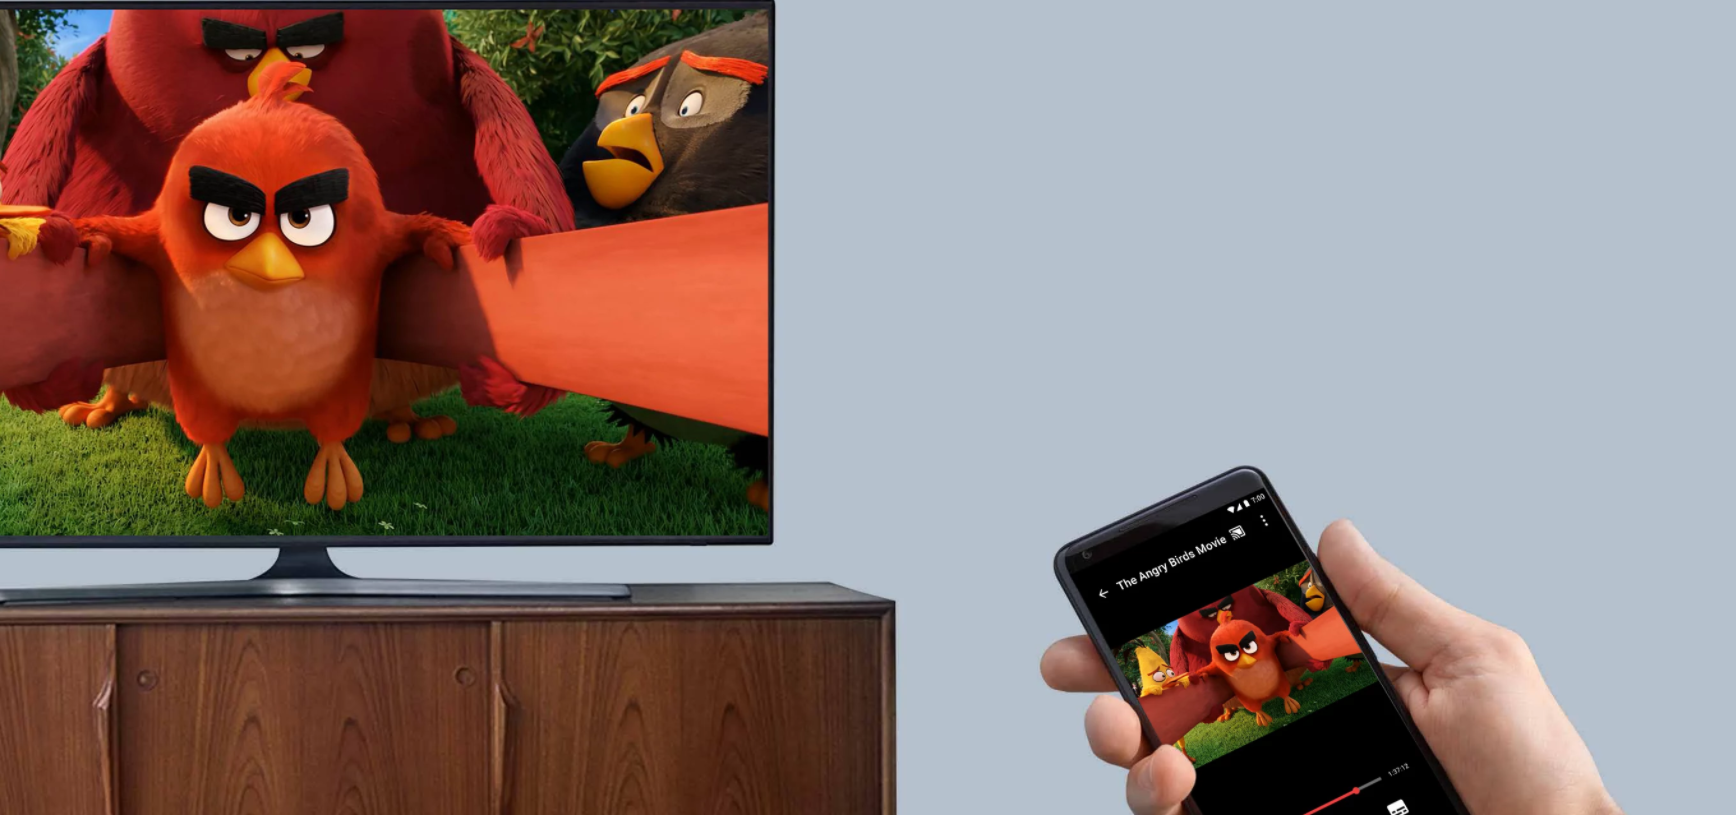 Aparato Dispositivo Smart TV Para Tele Pantalla Television Convertir  Inteligente